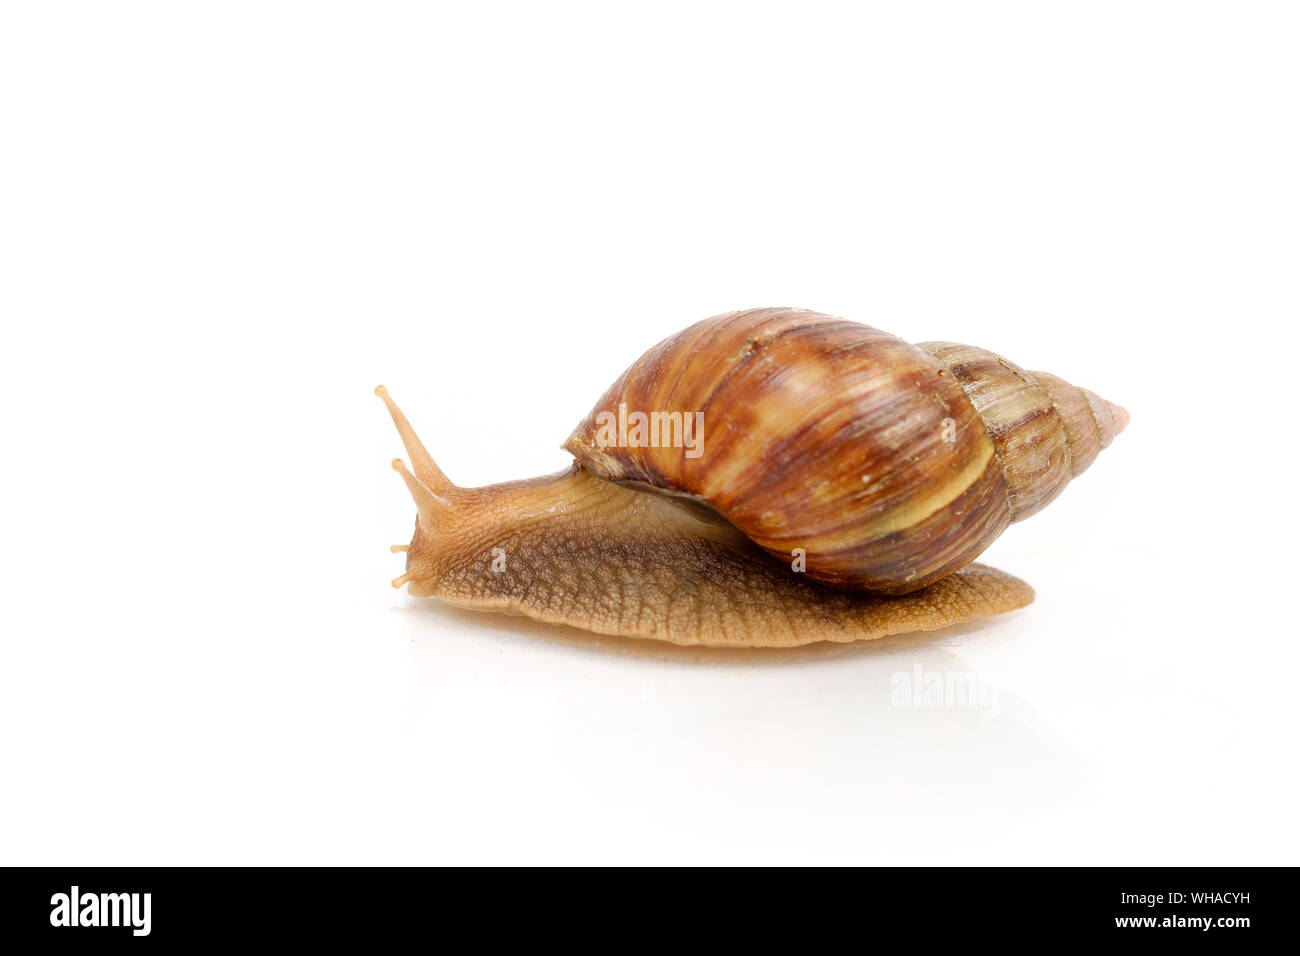 Garden snail on white background Stock Photo